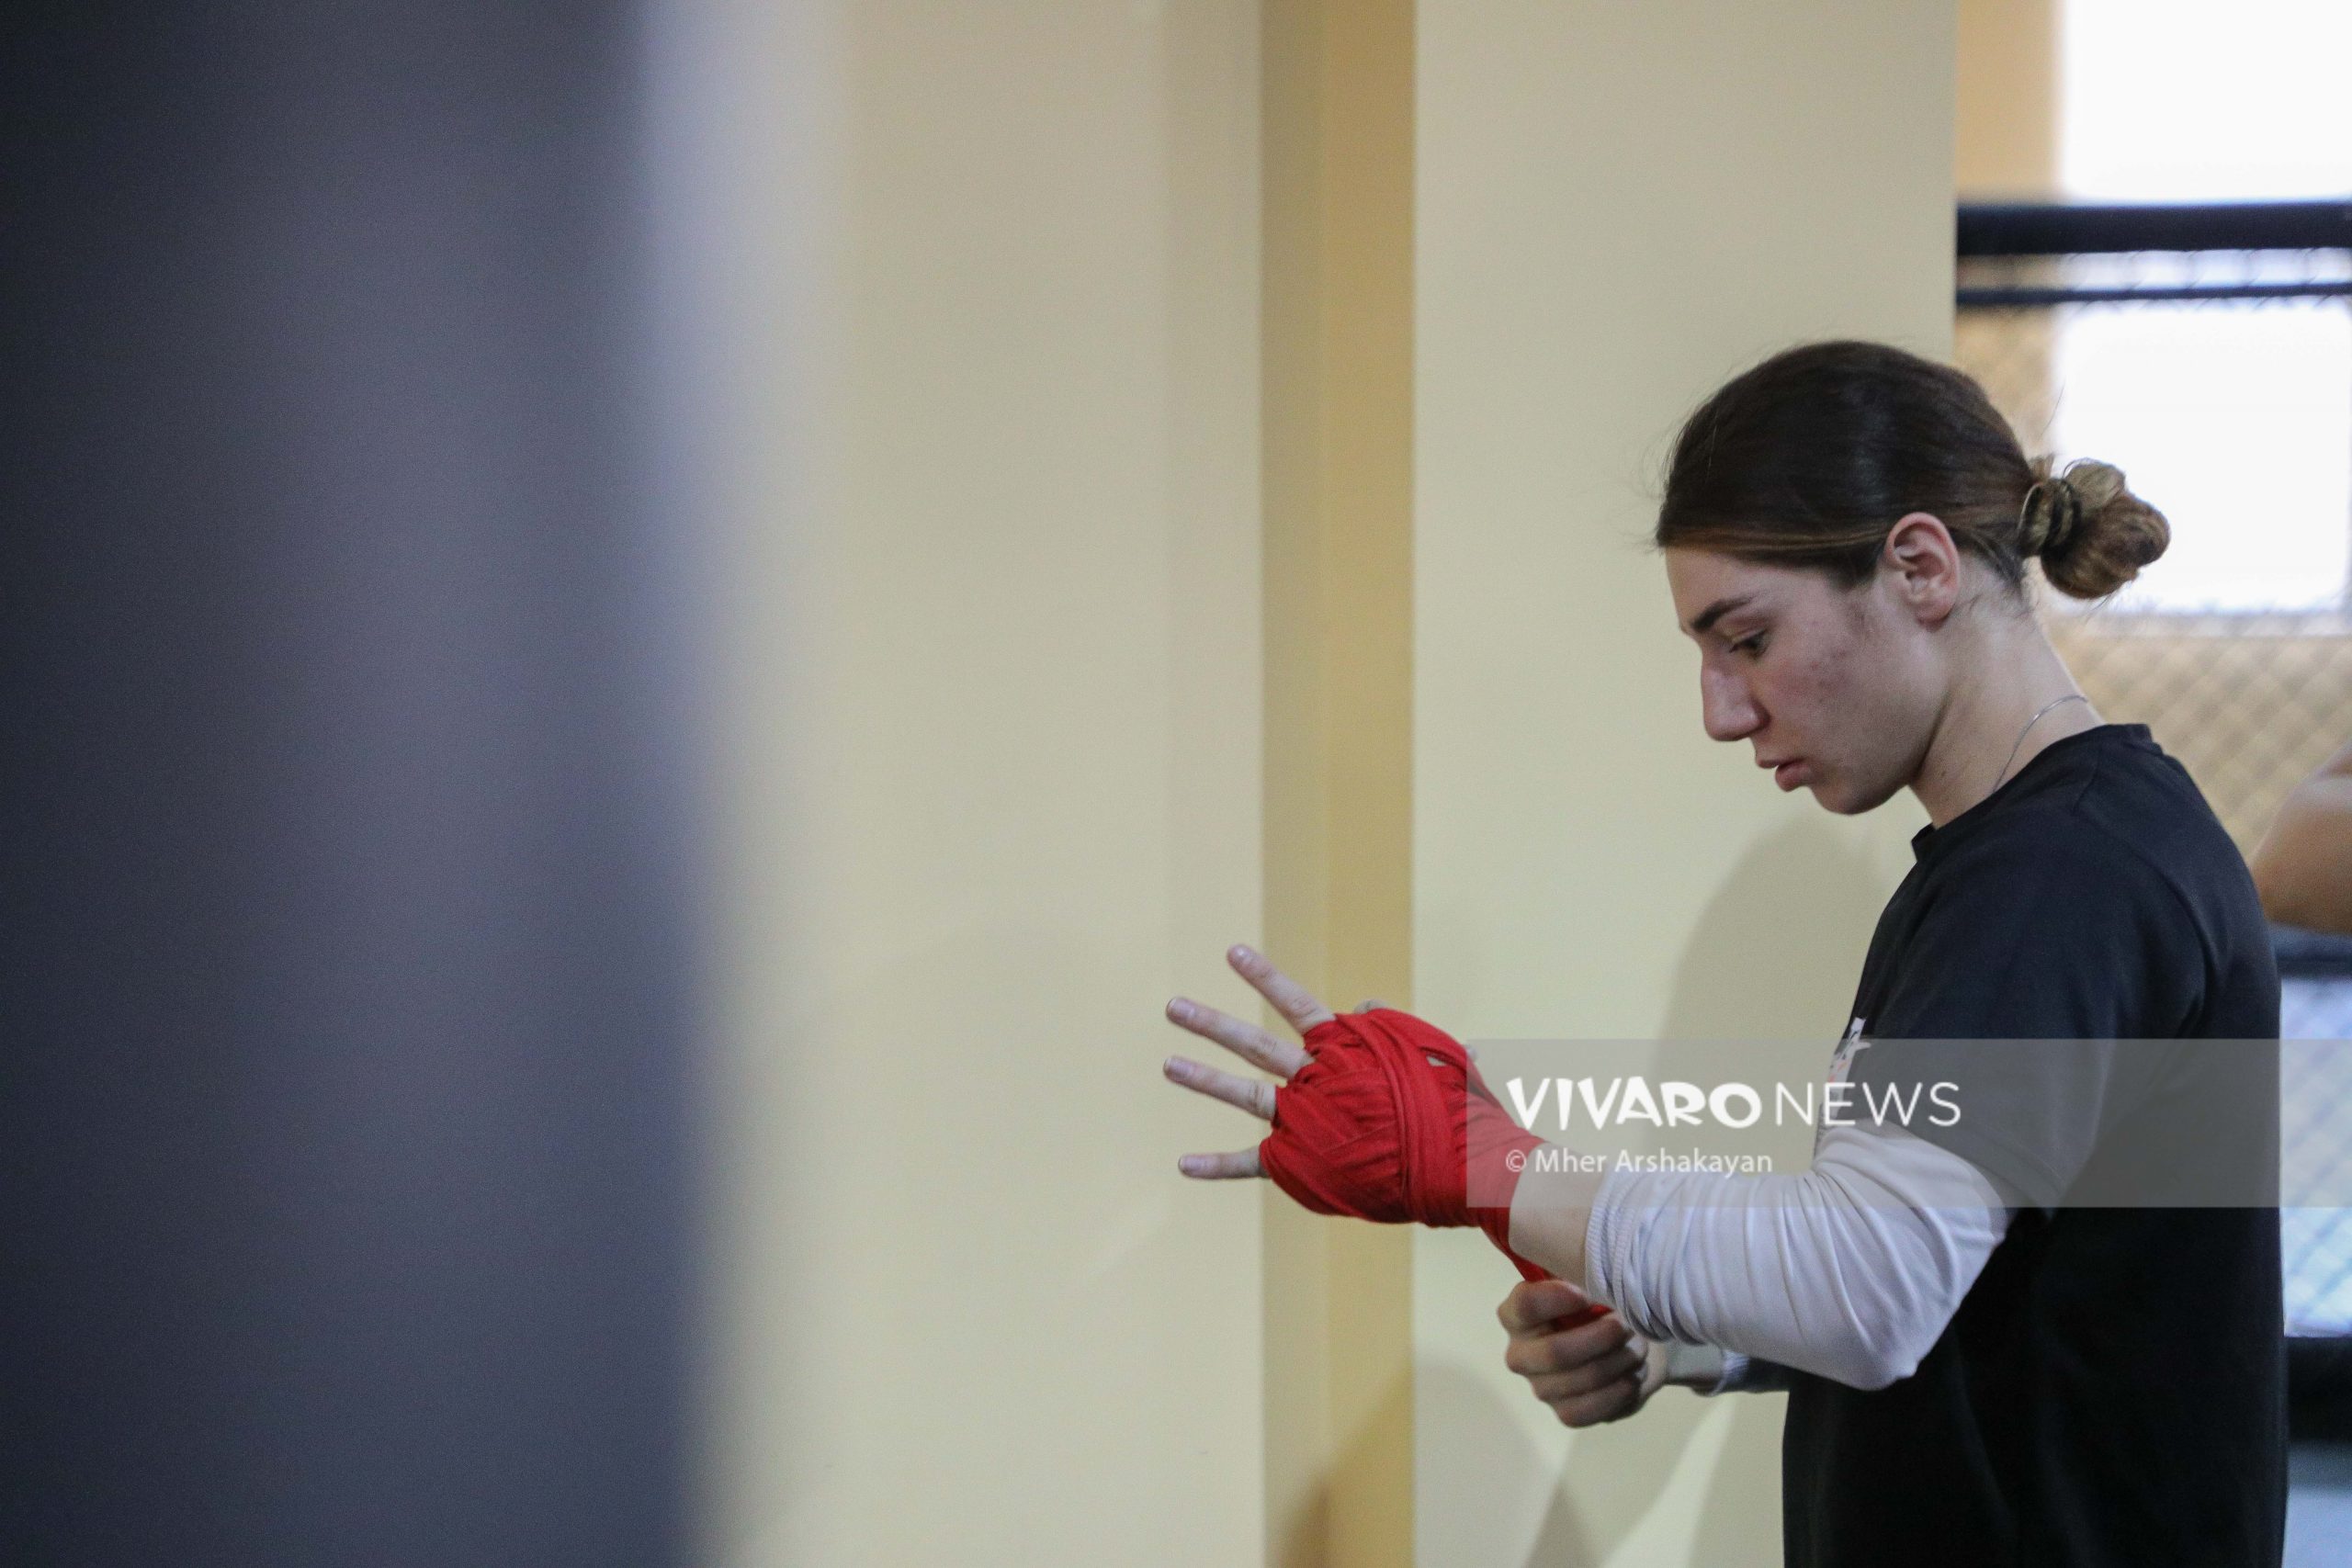 anush grigoryan boxing training 4 scaled - Դեպի տարվա առաջին քննություն. հայ բռնցքամարտիկների մարզումը լուսանկարներով